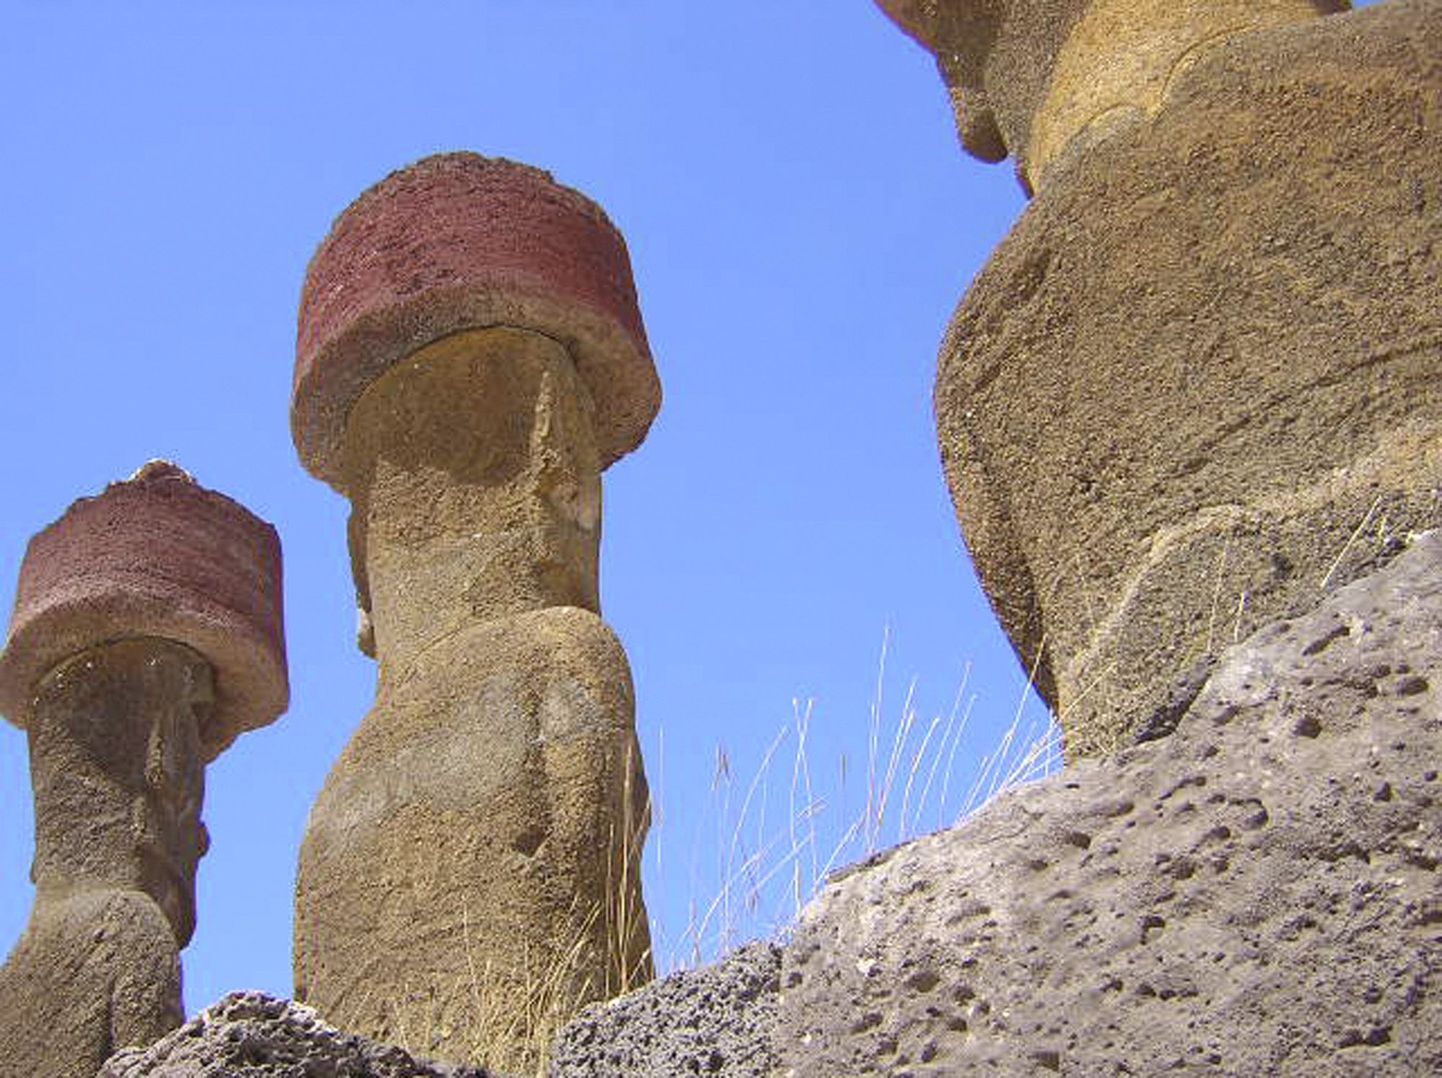 Fotol keskel moai kuju, millelt soomlane tüki kõrva murdis